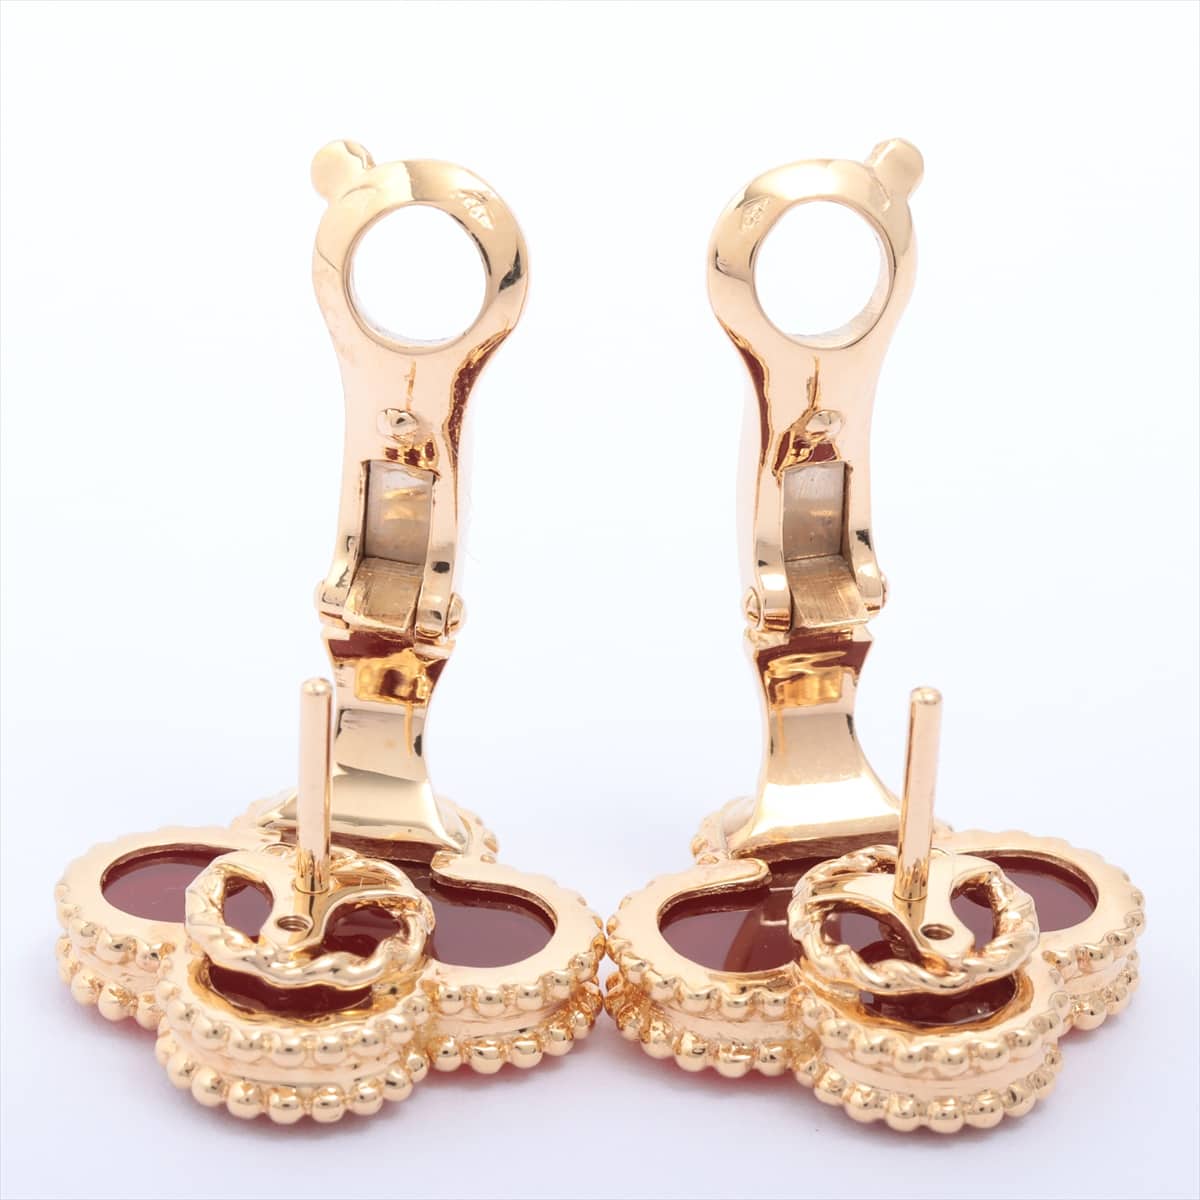 Van Cleef & Arpels Van Cleef & Arpels Vintage Alhambra Piercing jewelry 750YG